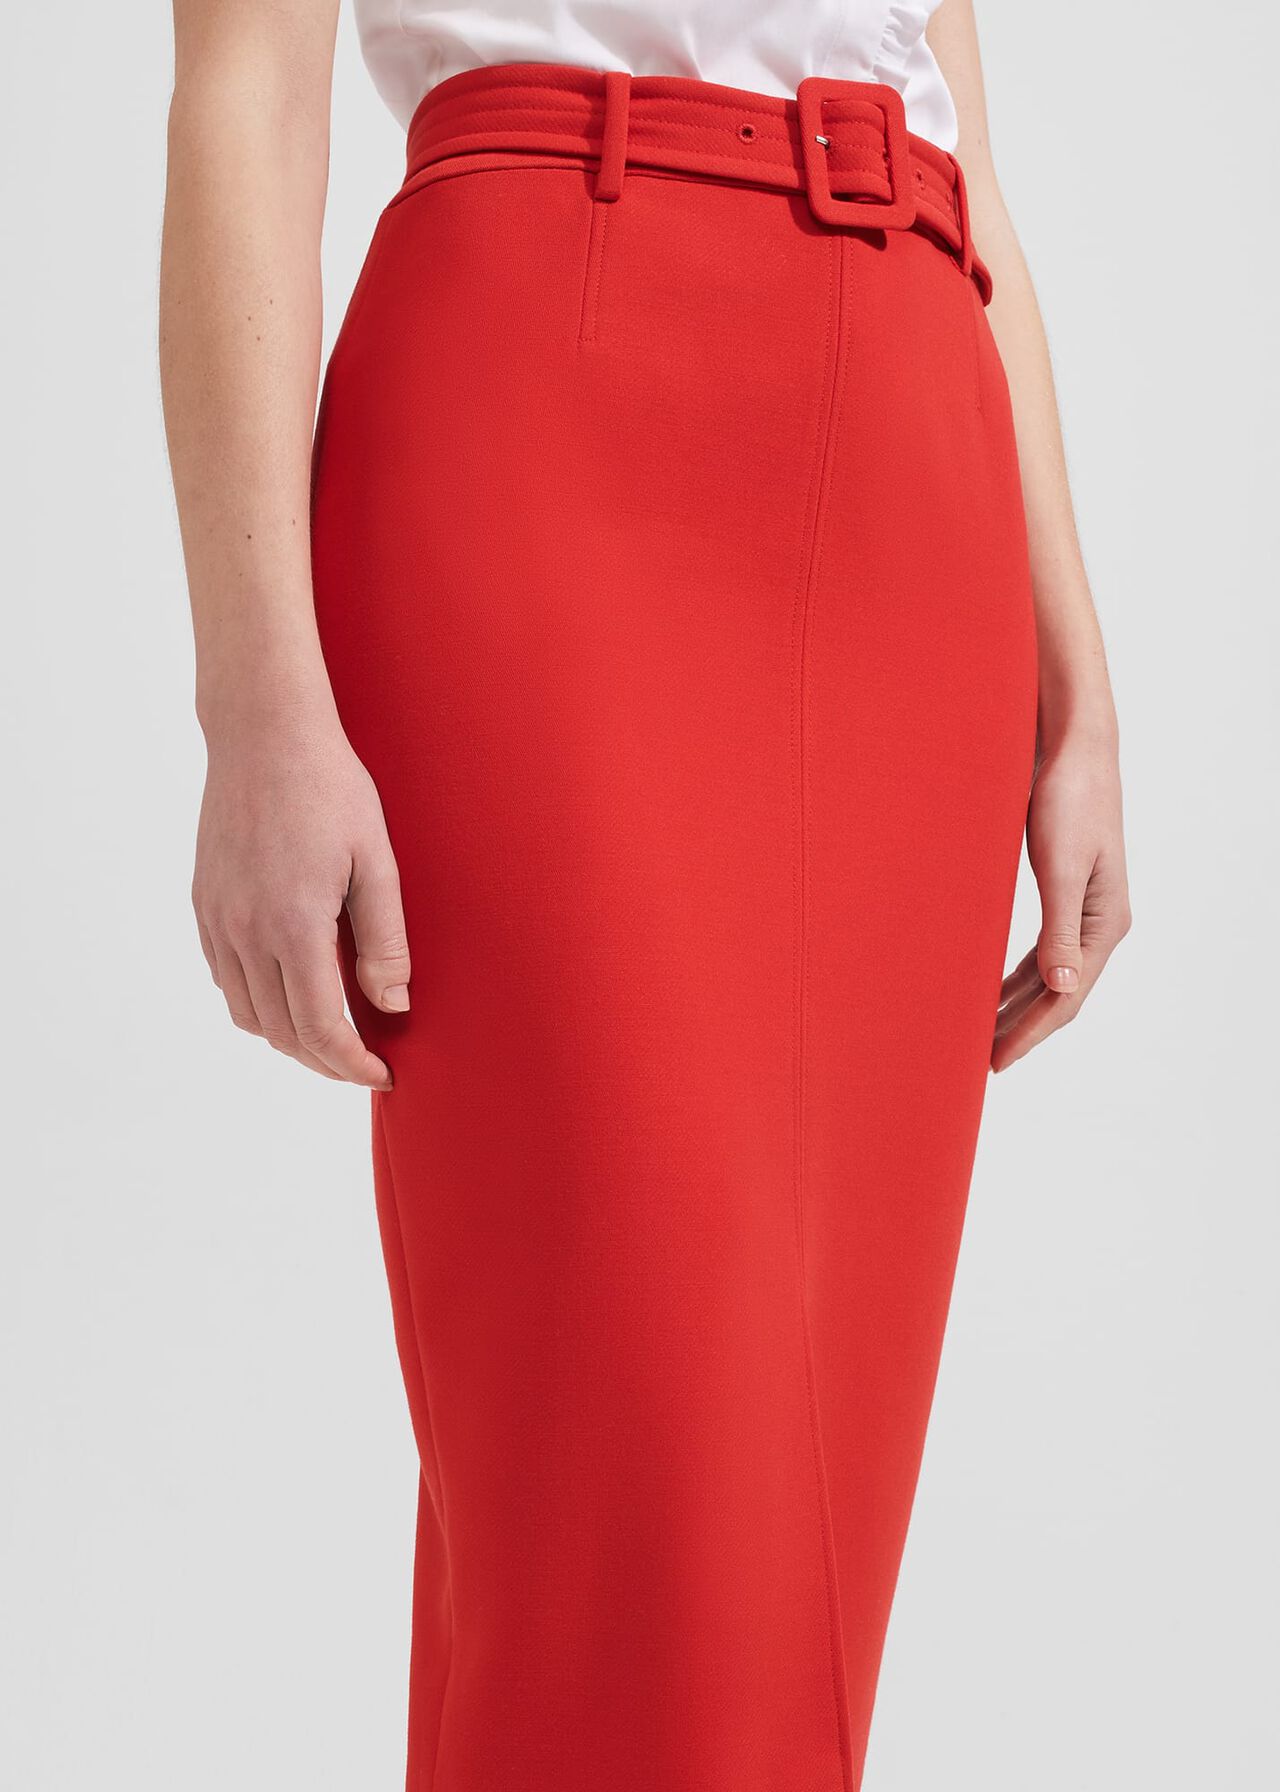 Andie Skirt, Flame Red, hi-res